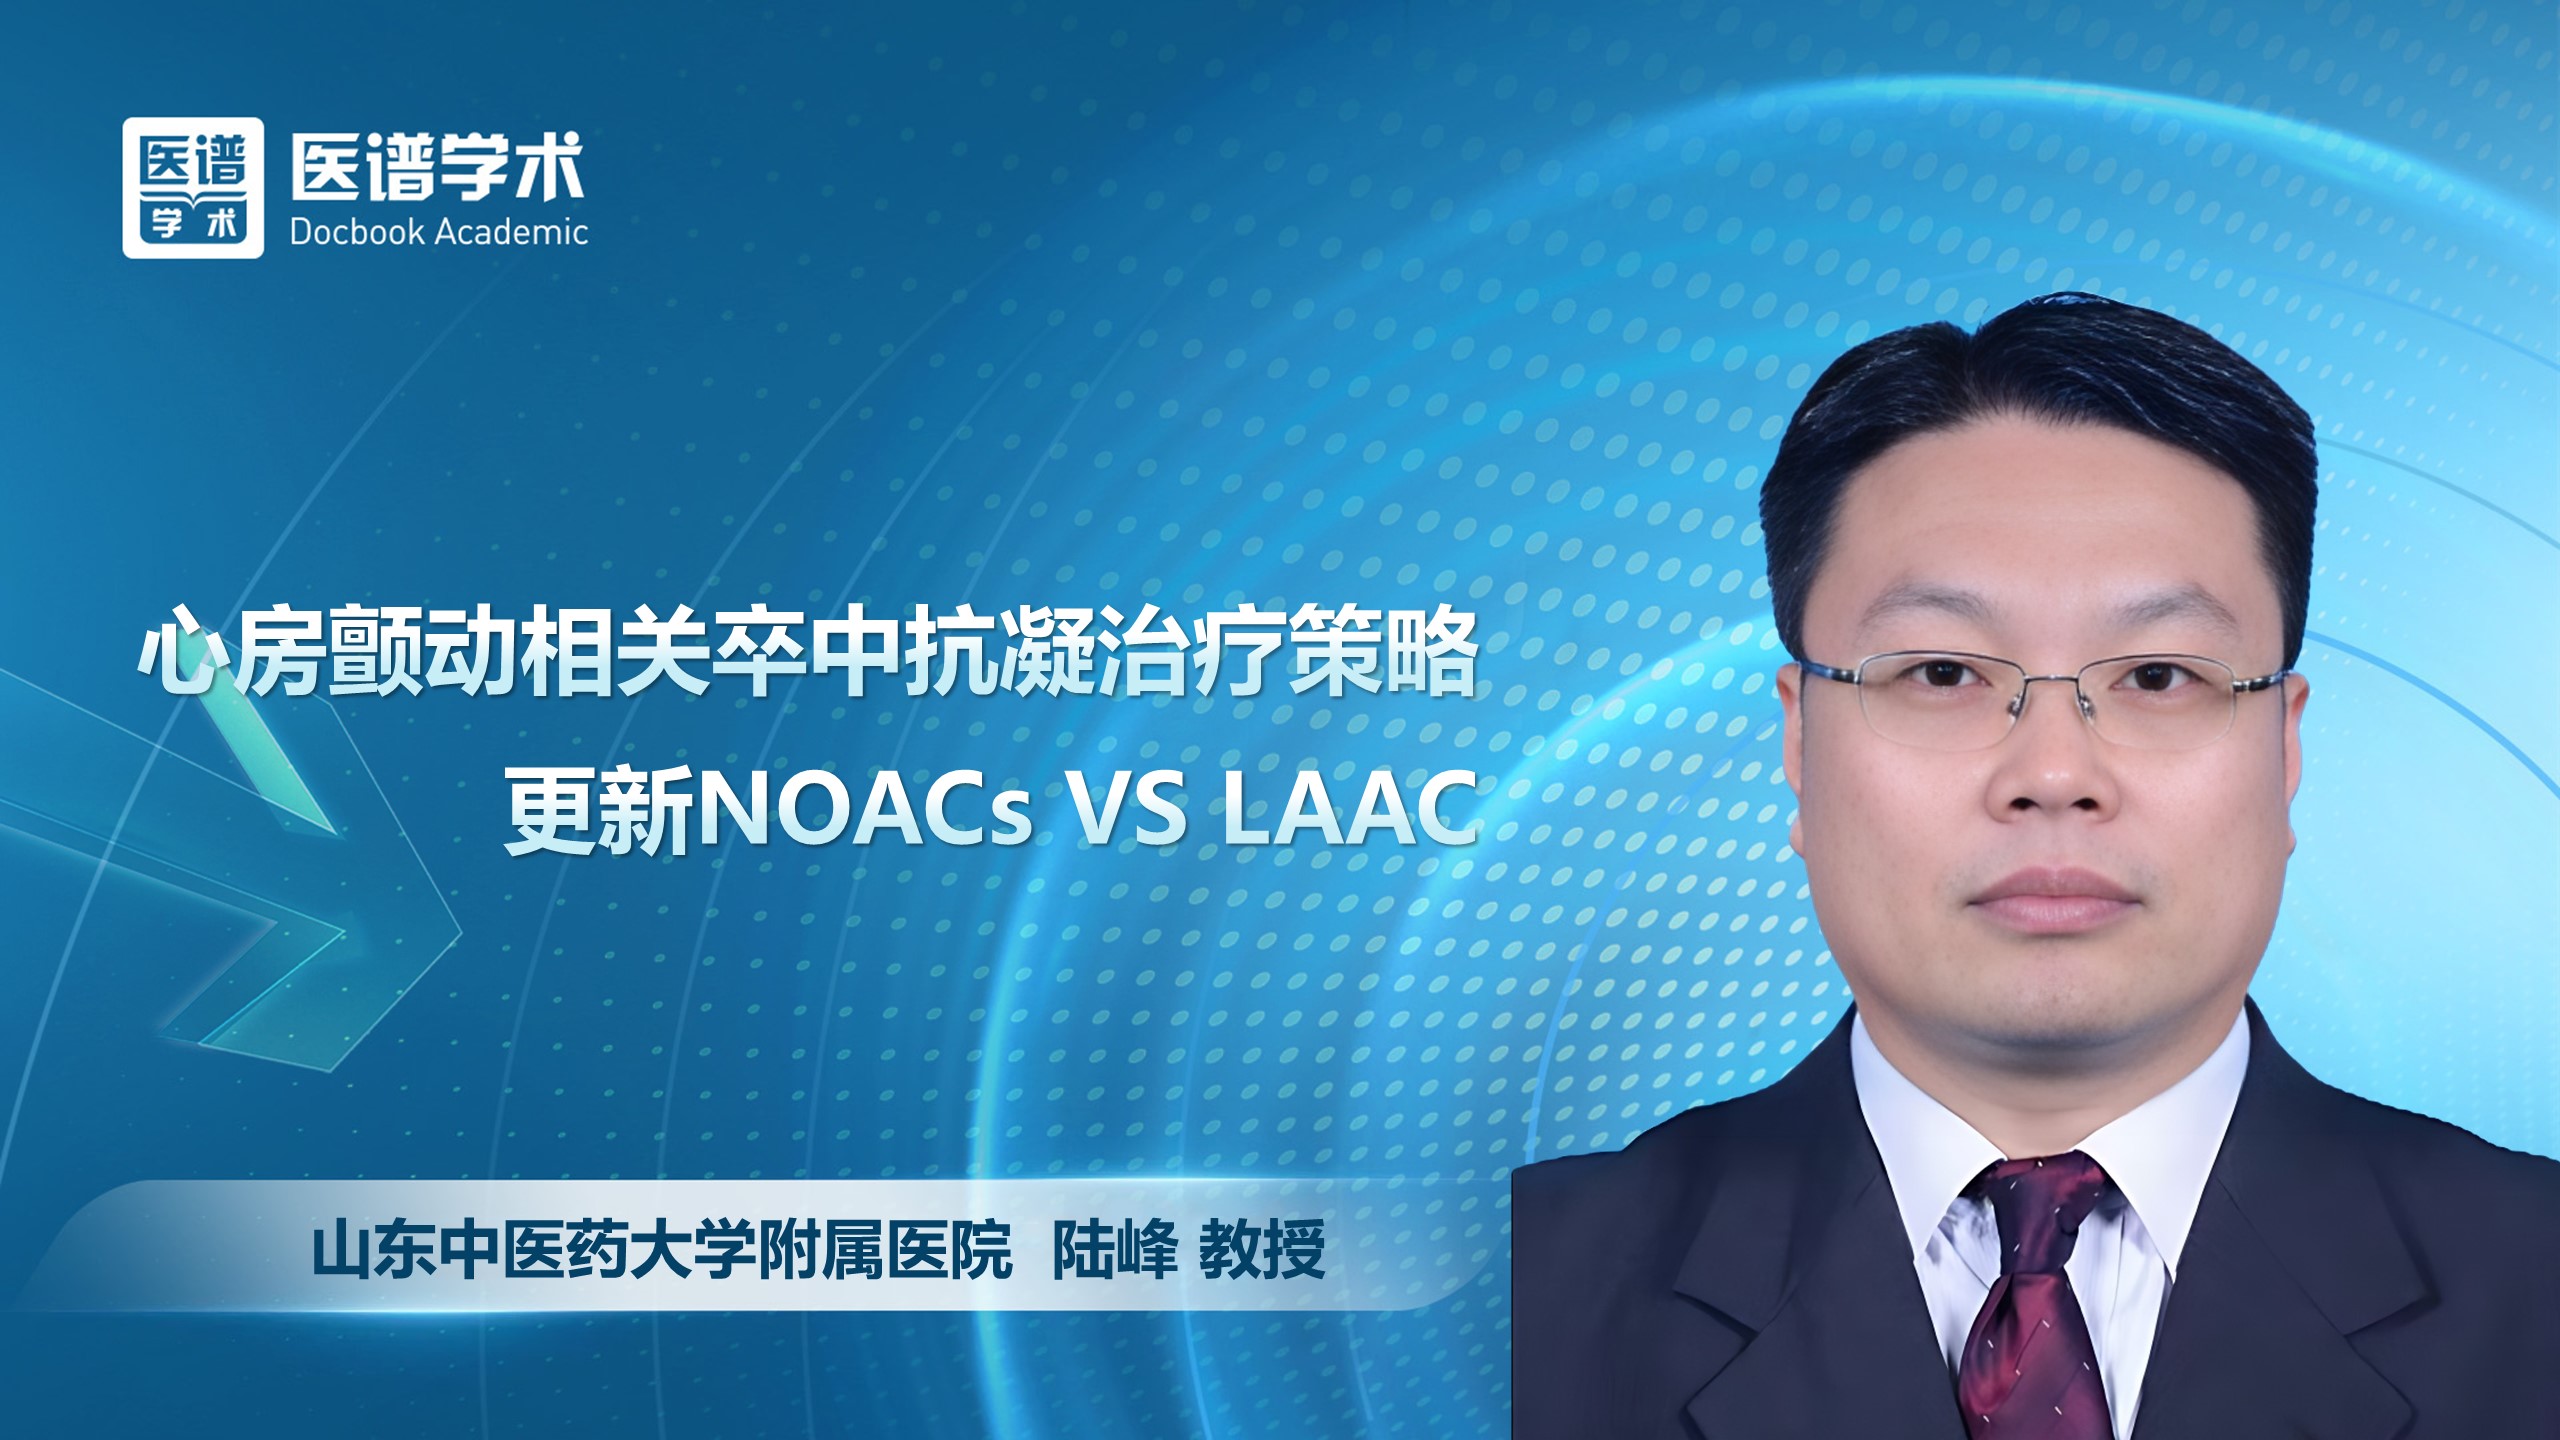 陆峰-心房颤动相关卒中抗凝治疗策略更新NOACs VS LAAC